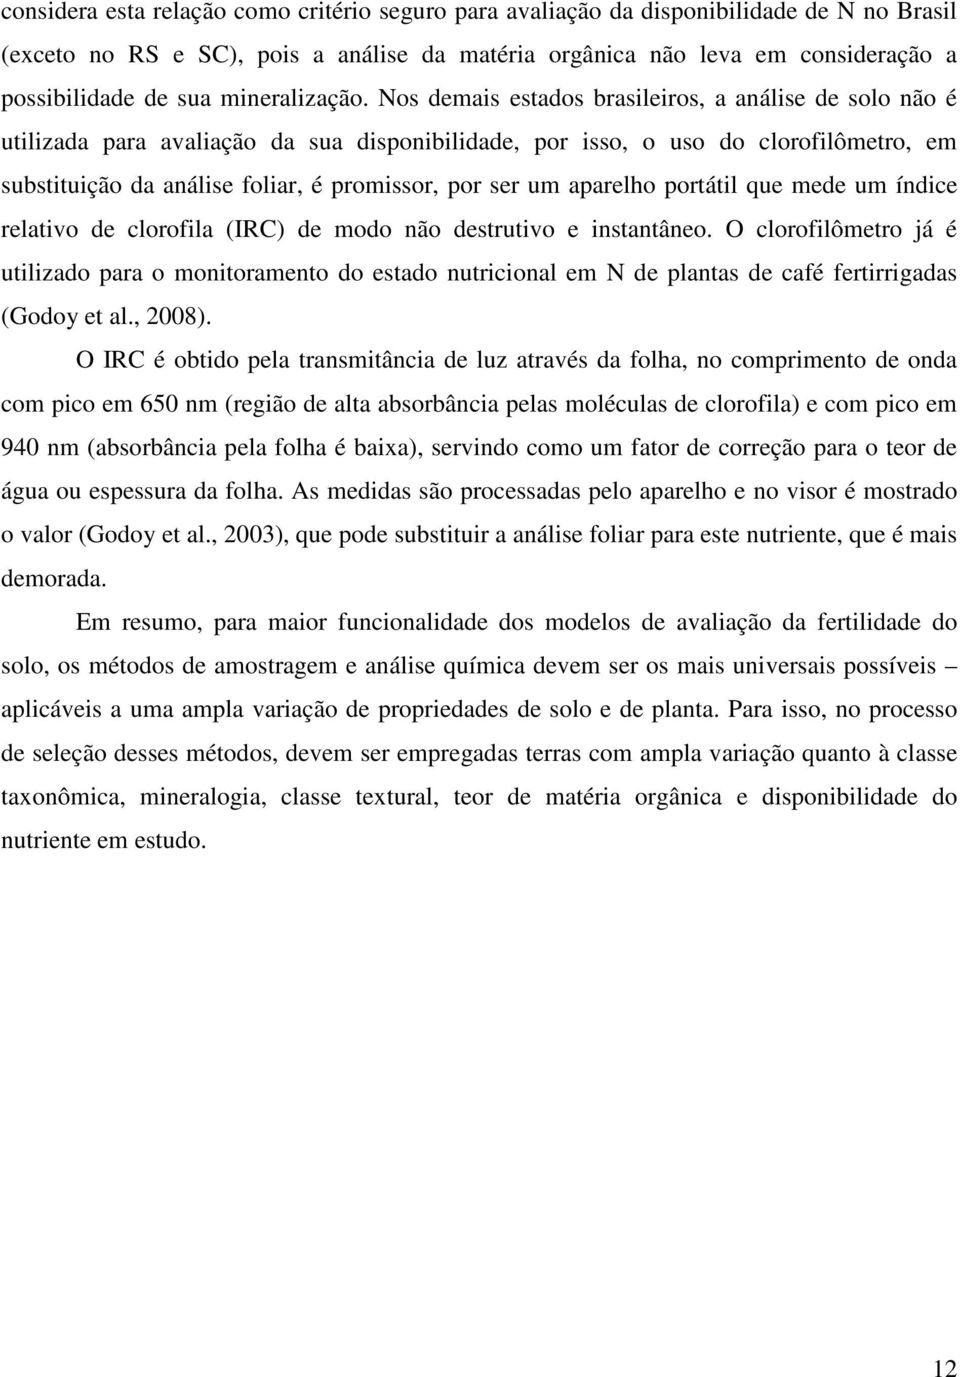 Nos demais estados brasileiros, a análise de solo não é utilizada para avaliação da sua disponibilidade, por isso, o uso do clorofilômetro, em substituição da análise foliar, é promissor, por ser um